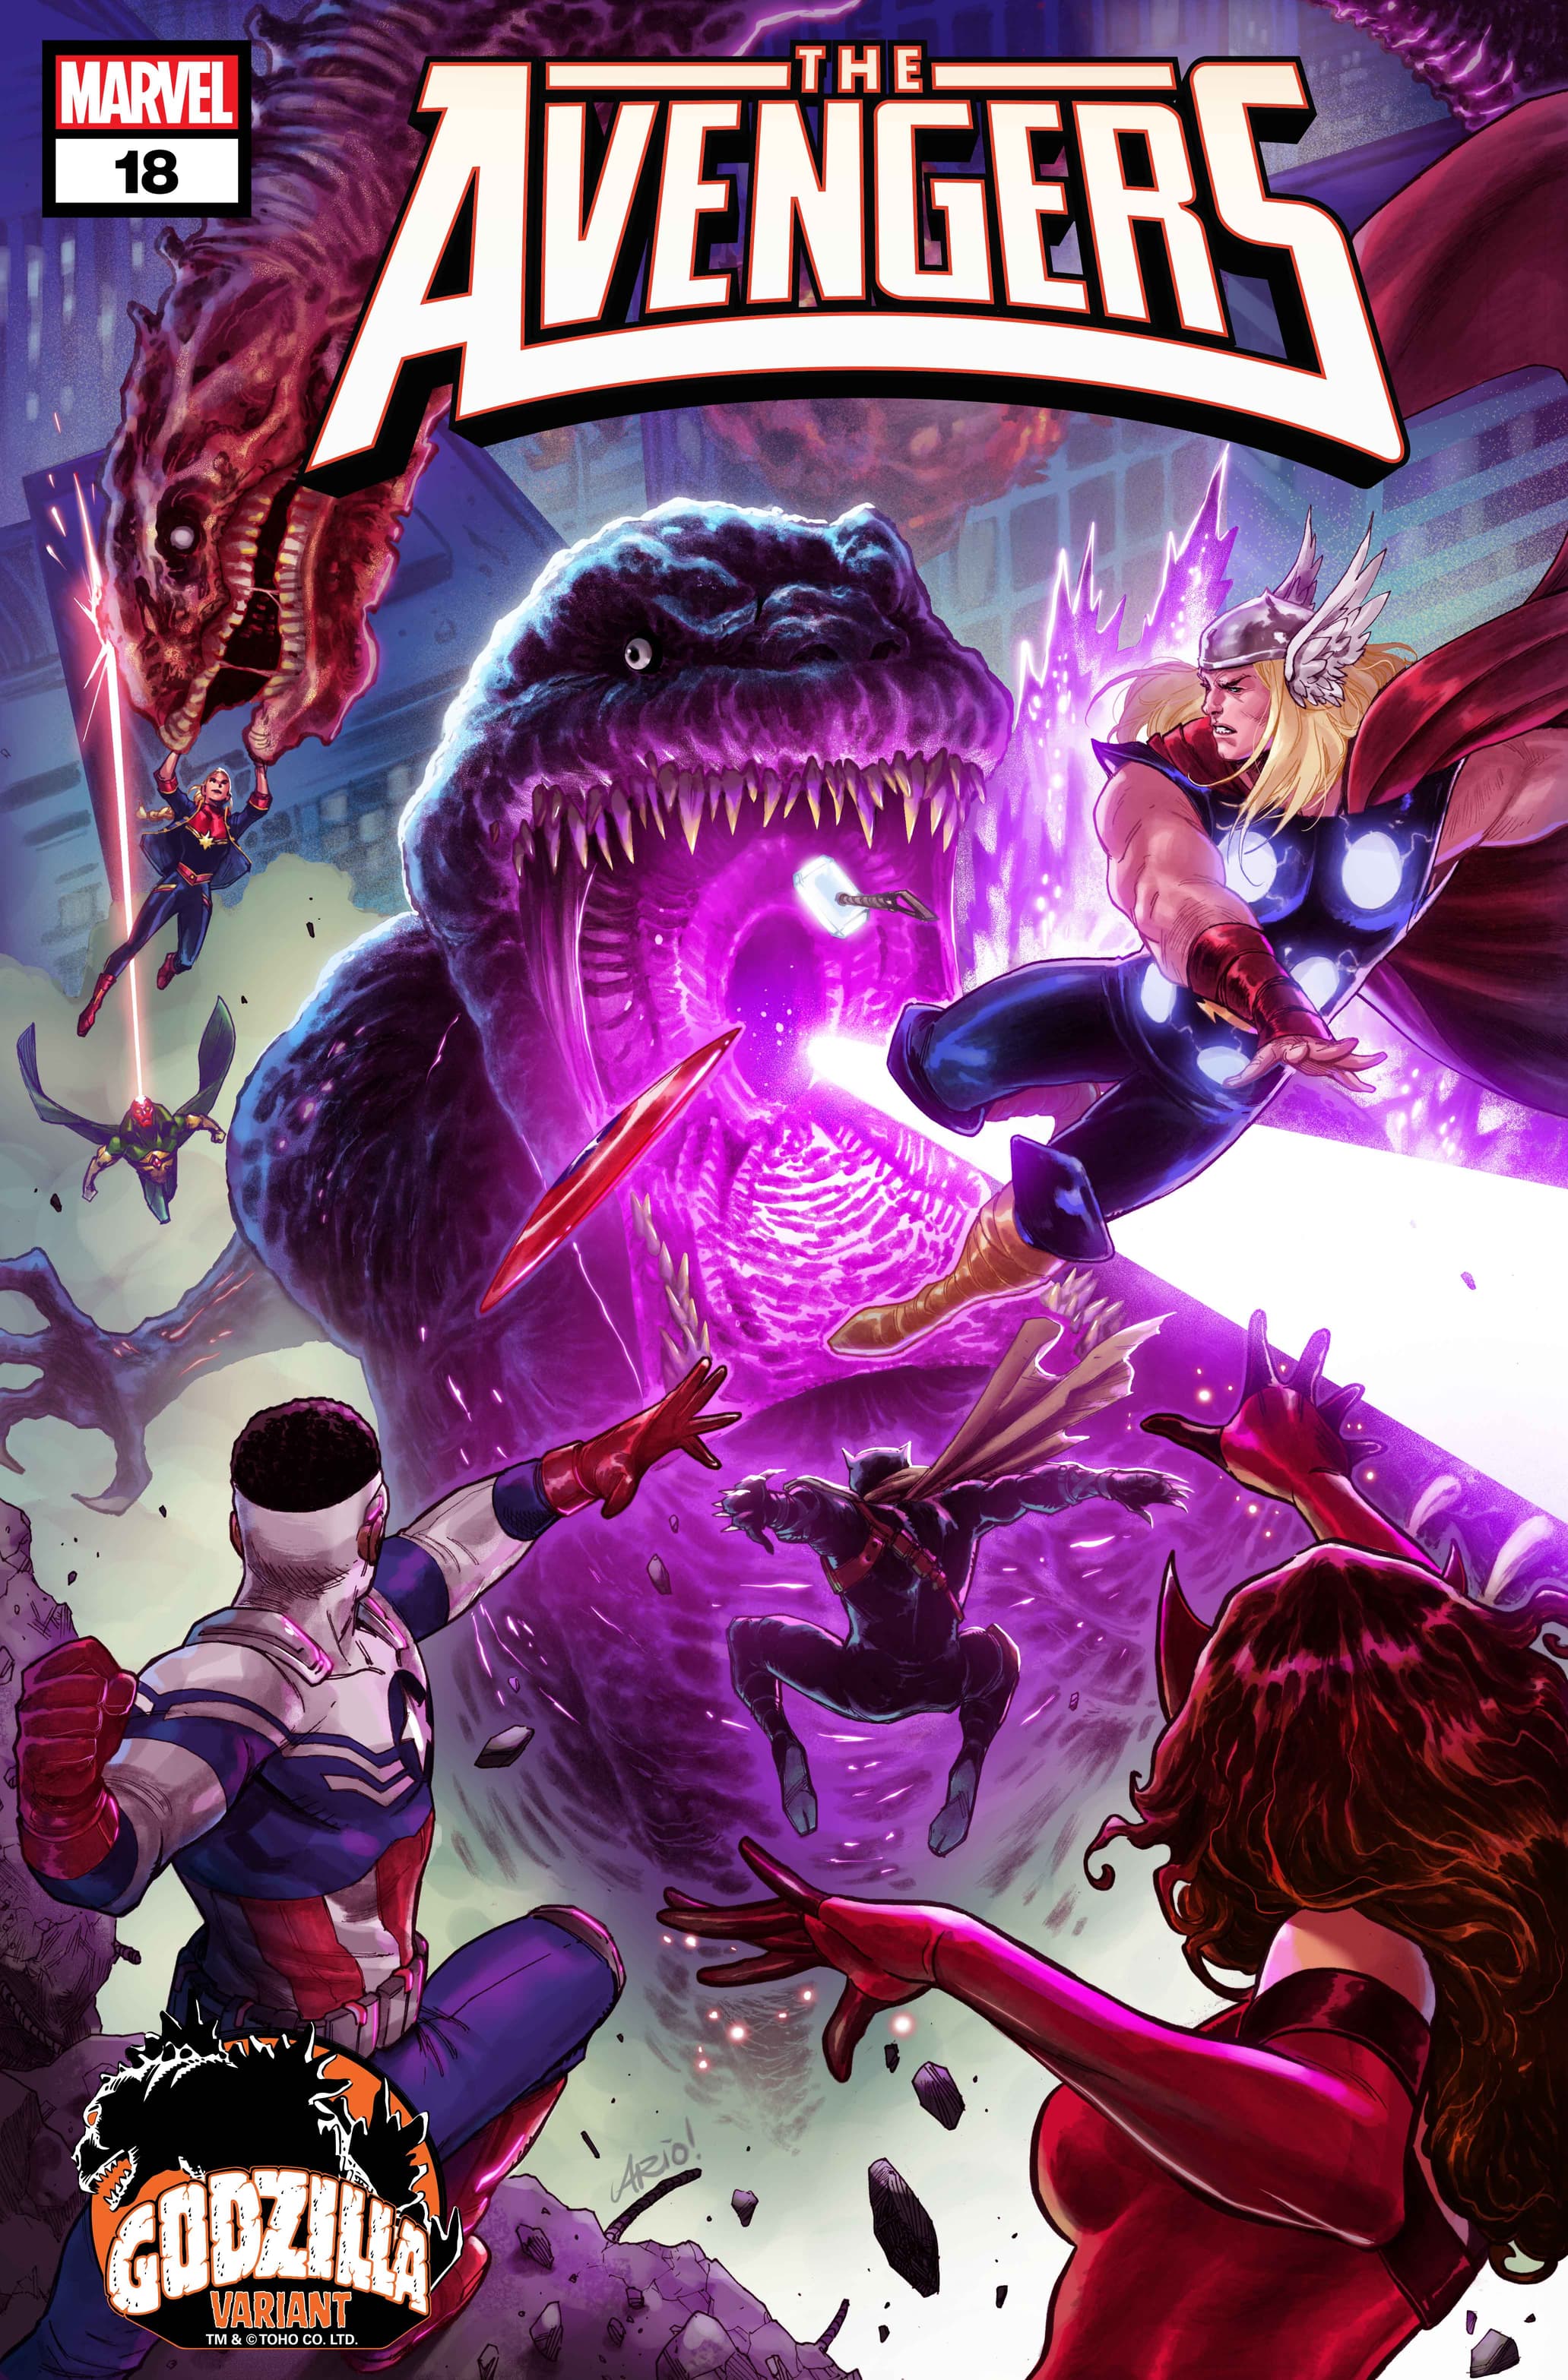 AVENGERS #18 Godzilla Variant Cover by Ario Anindito